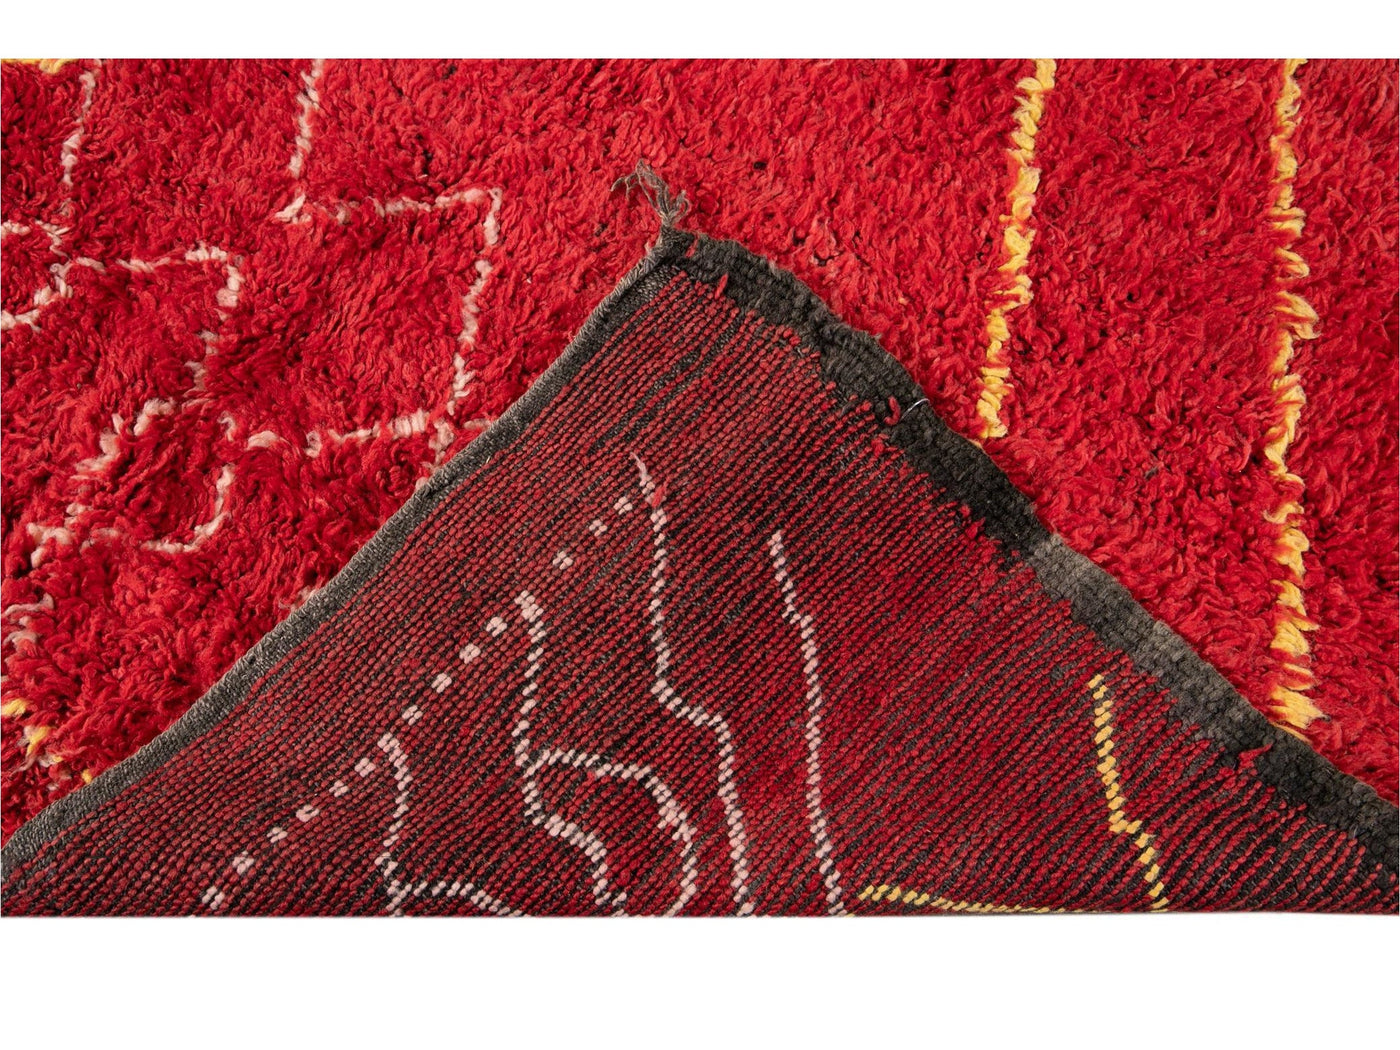 Vintage Red Tribal Moroccan Wool Rug, 6 x 9